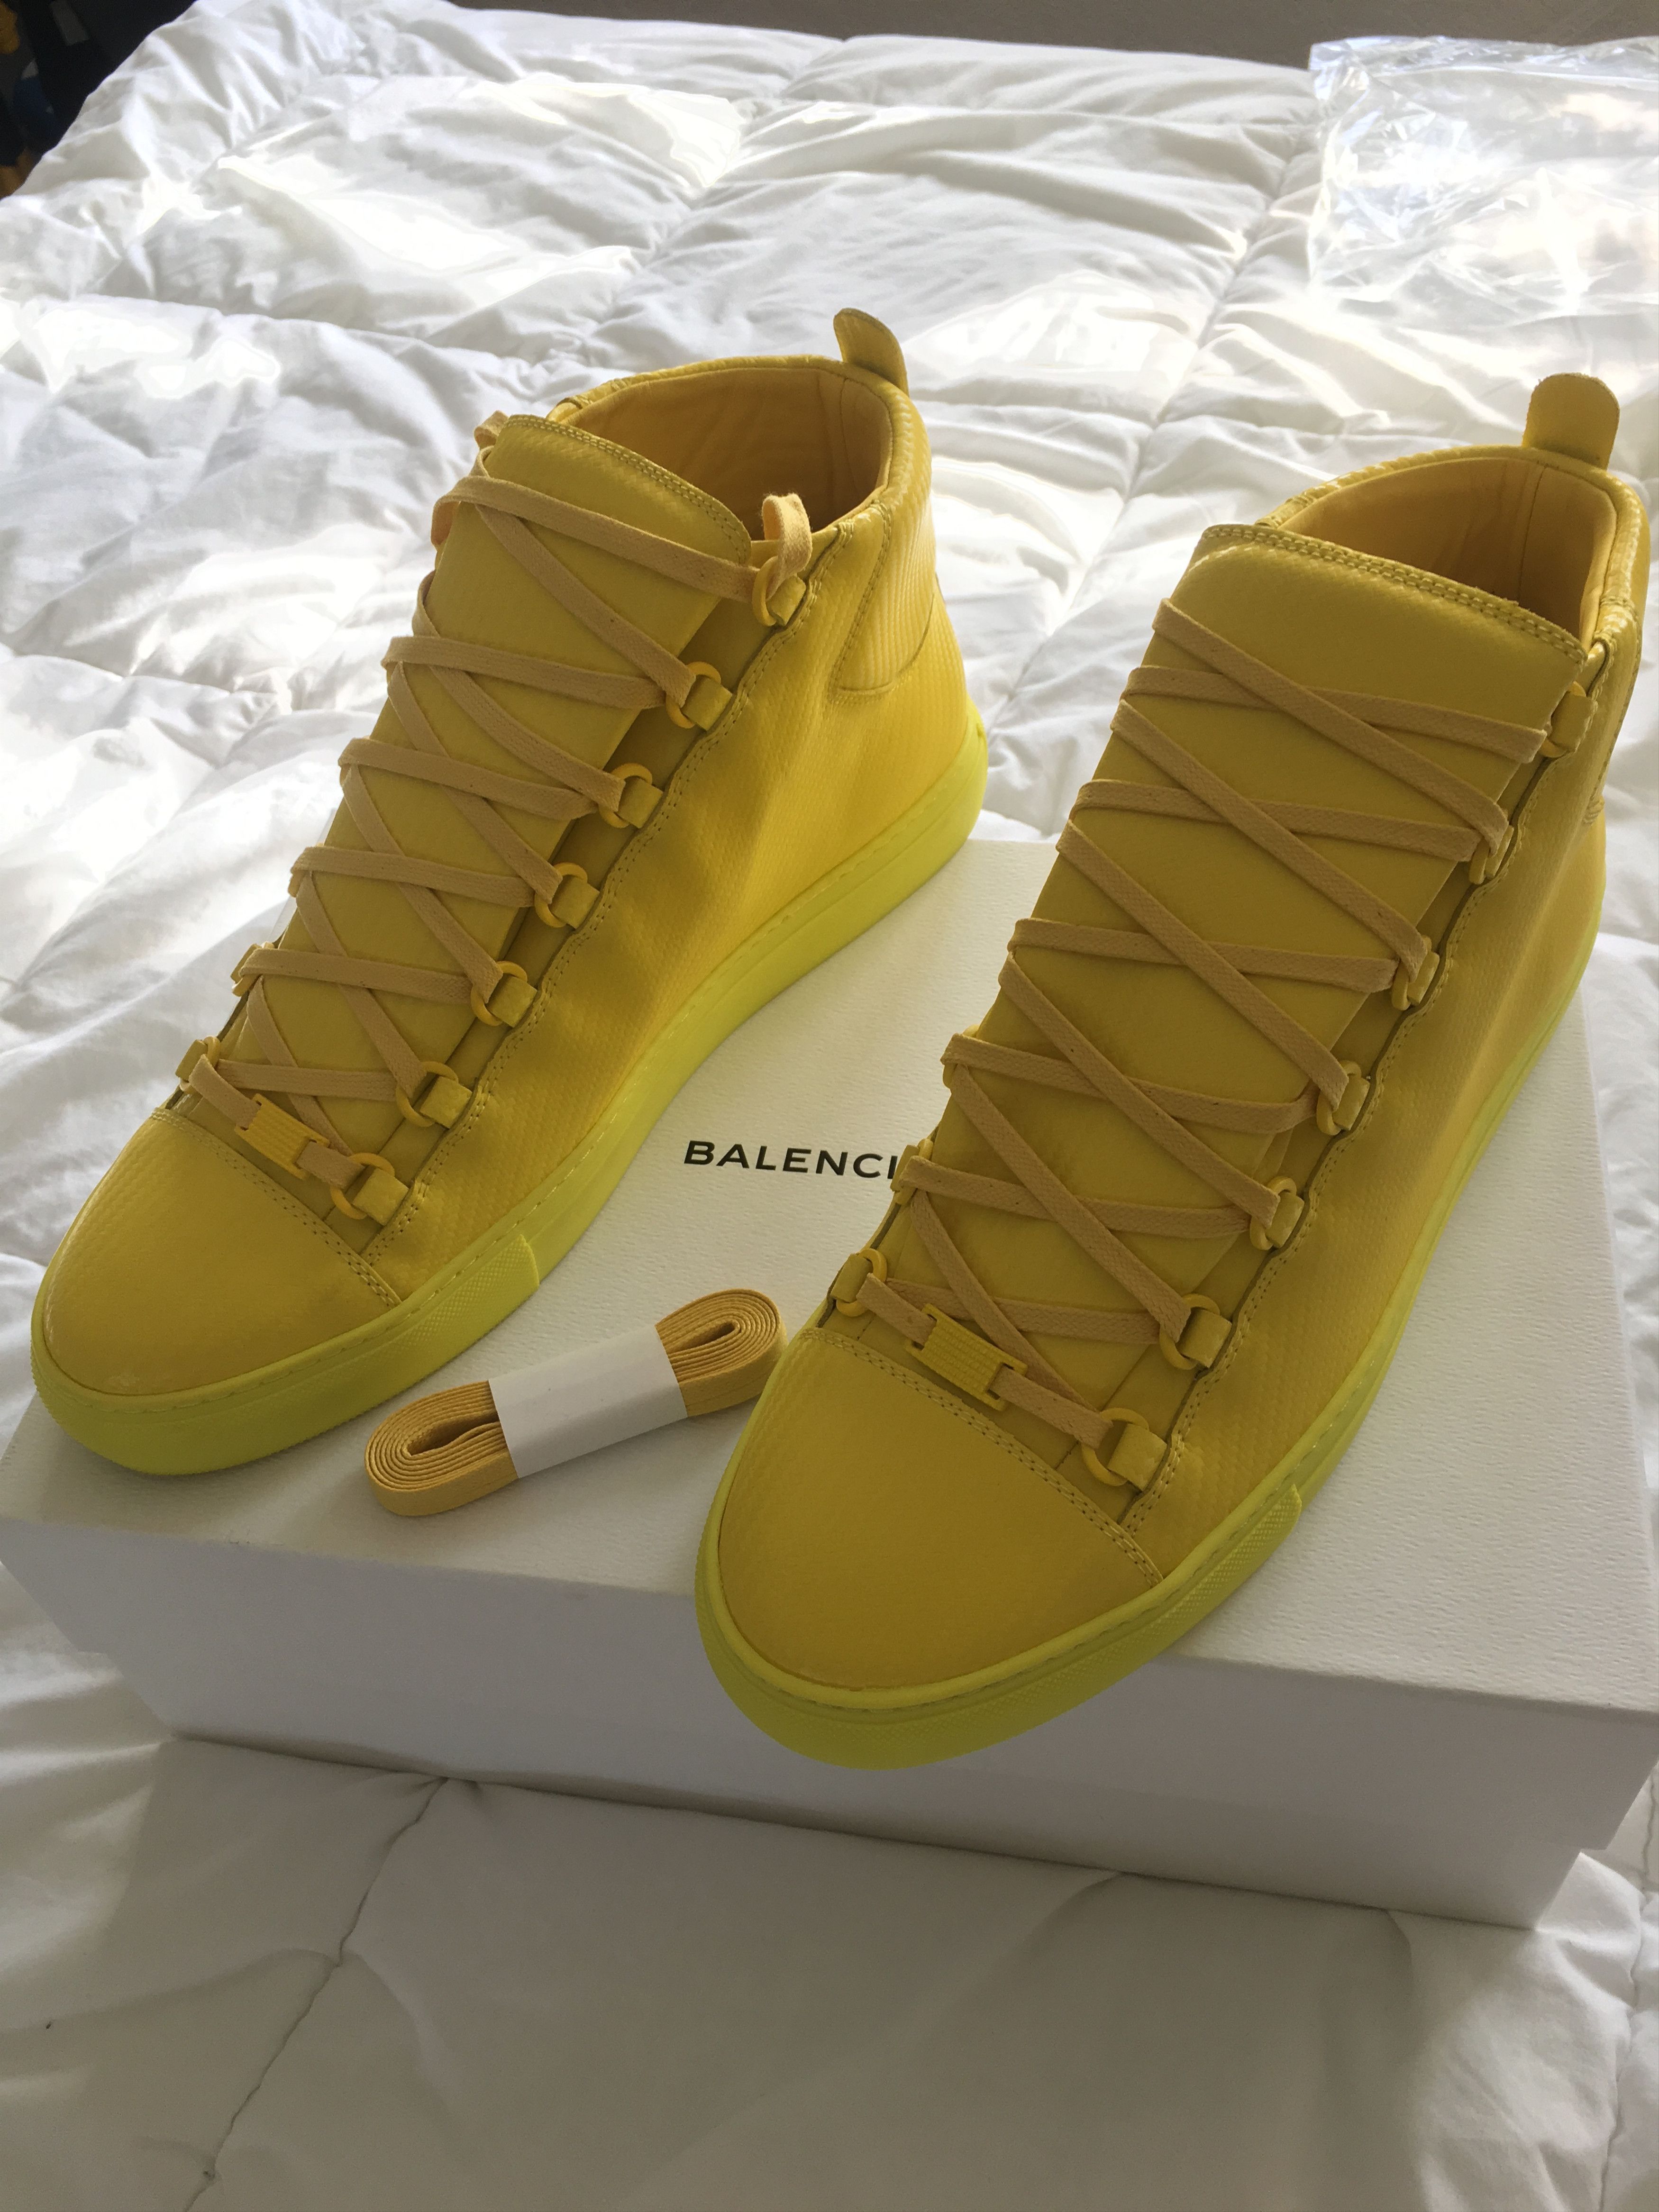 Balenciaga Arena Carbon Design Sneakers (yellow) | Grailed